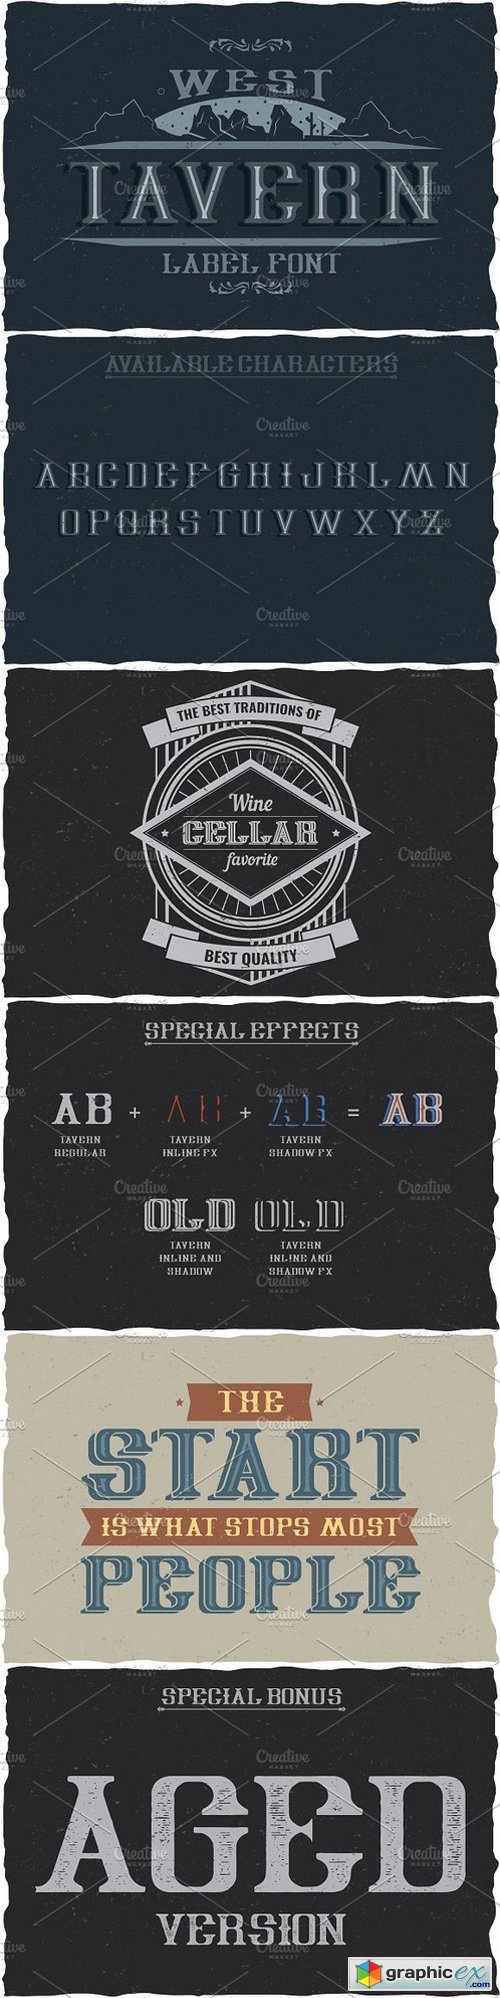 Tavern Vintage Label Typeface